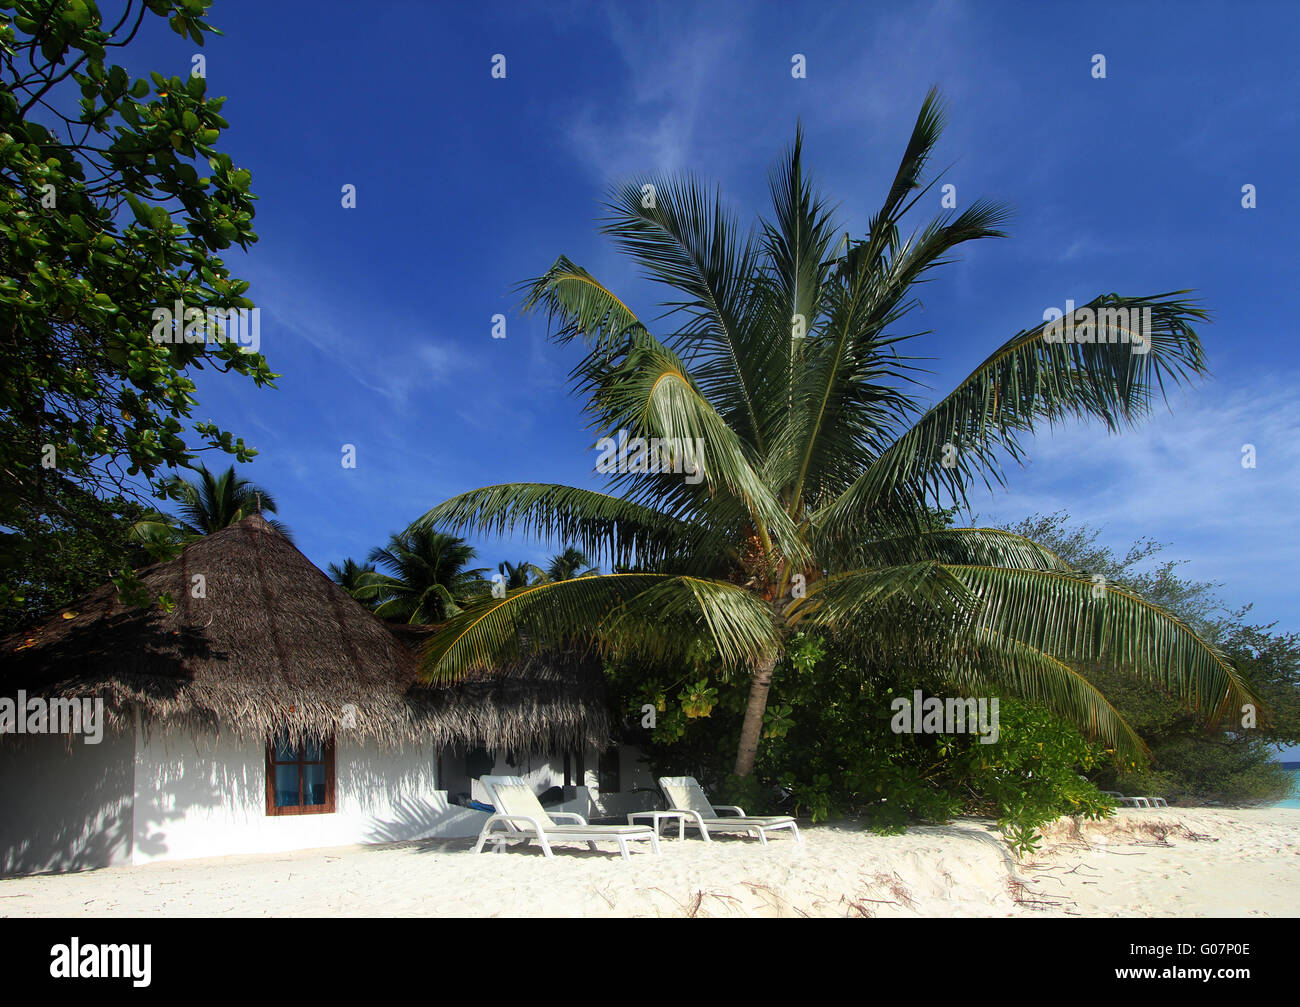 beach bungalow Stock Photo - Alamy